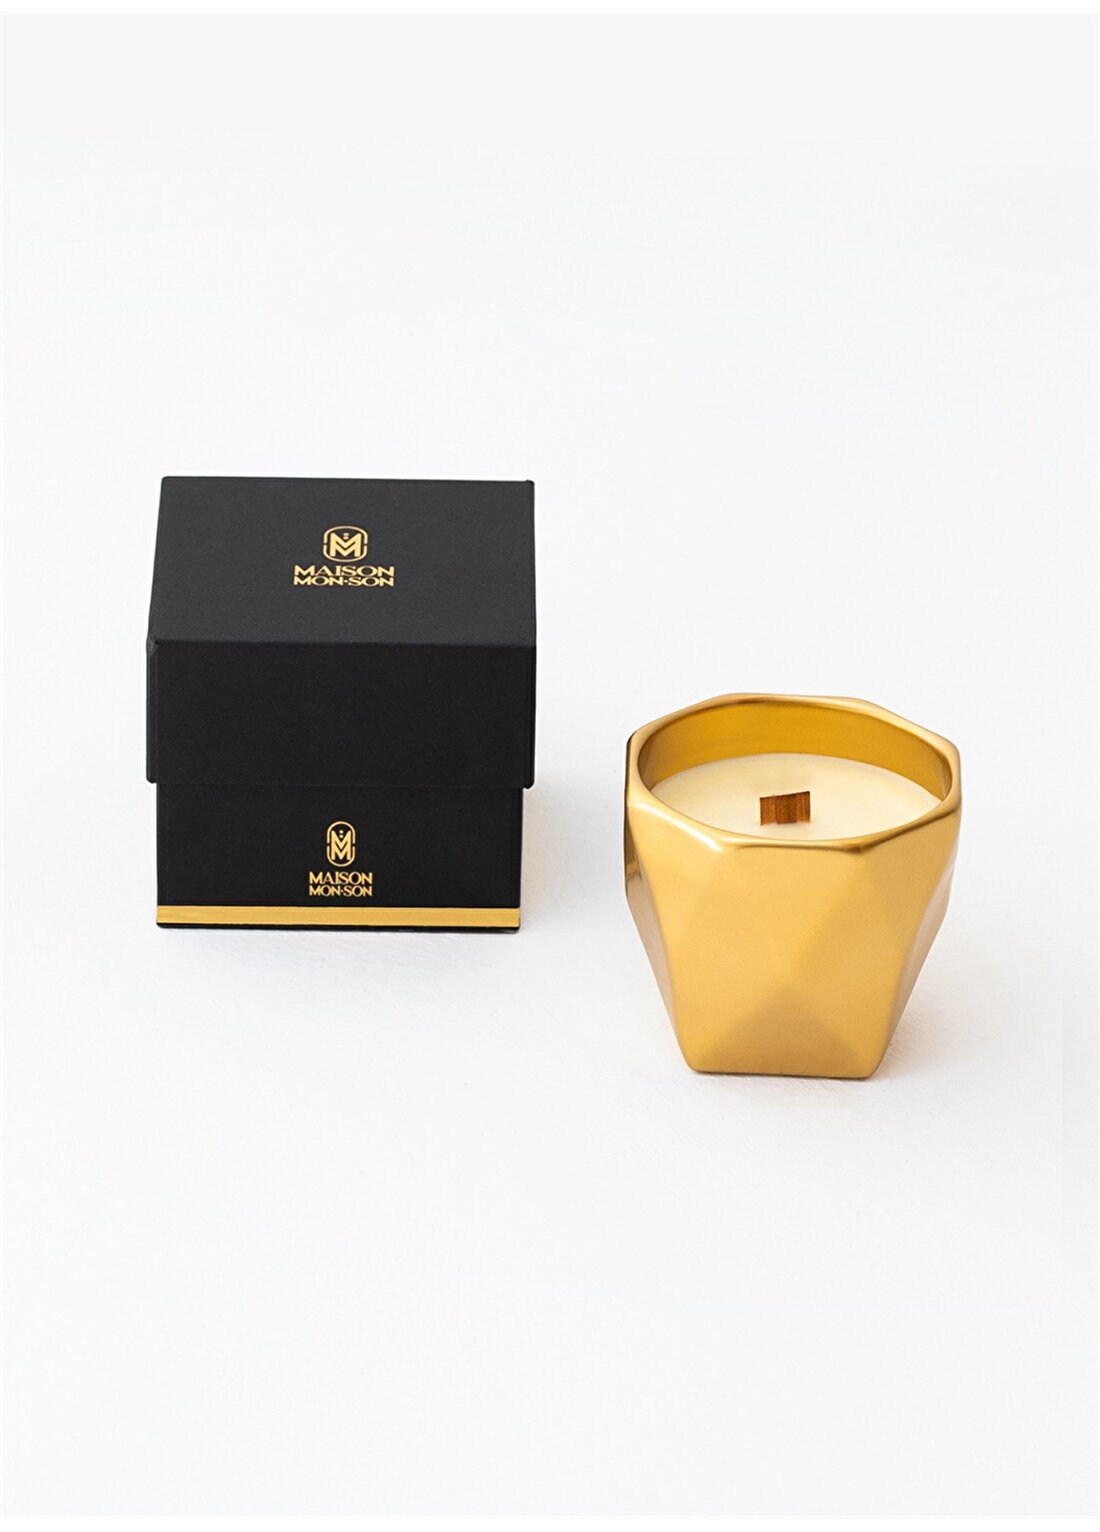 Maison Monson Moi Gold Luxury Candle Floral Kokulu Mum